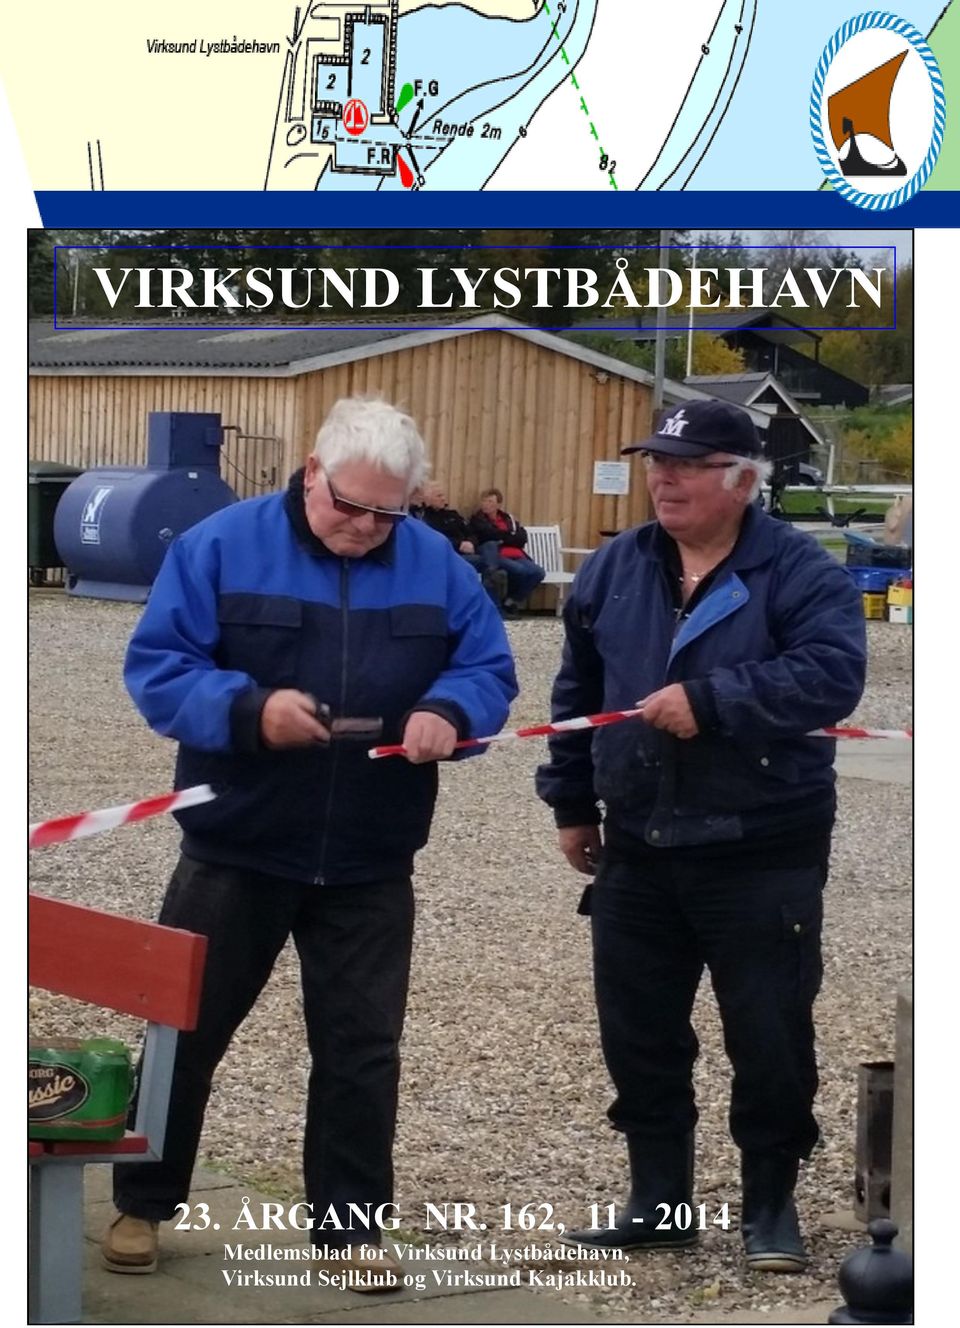 NR. 161 162 Kajakklub. 08 09-2014 2014 23. ÅRGANG NR.